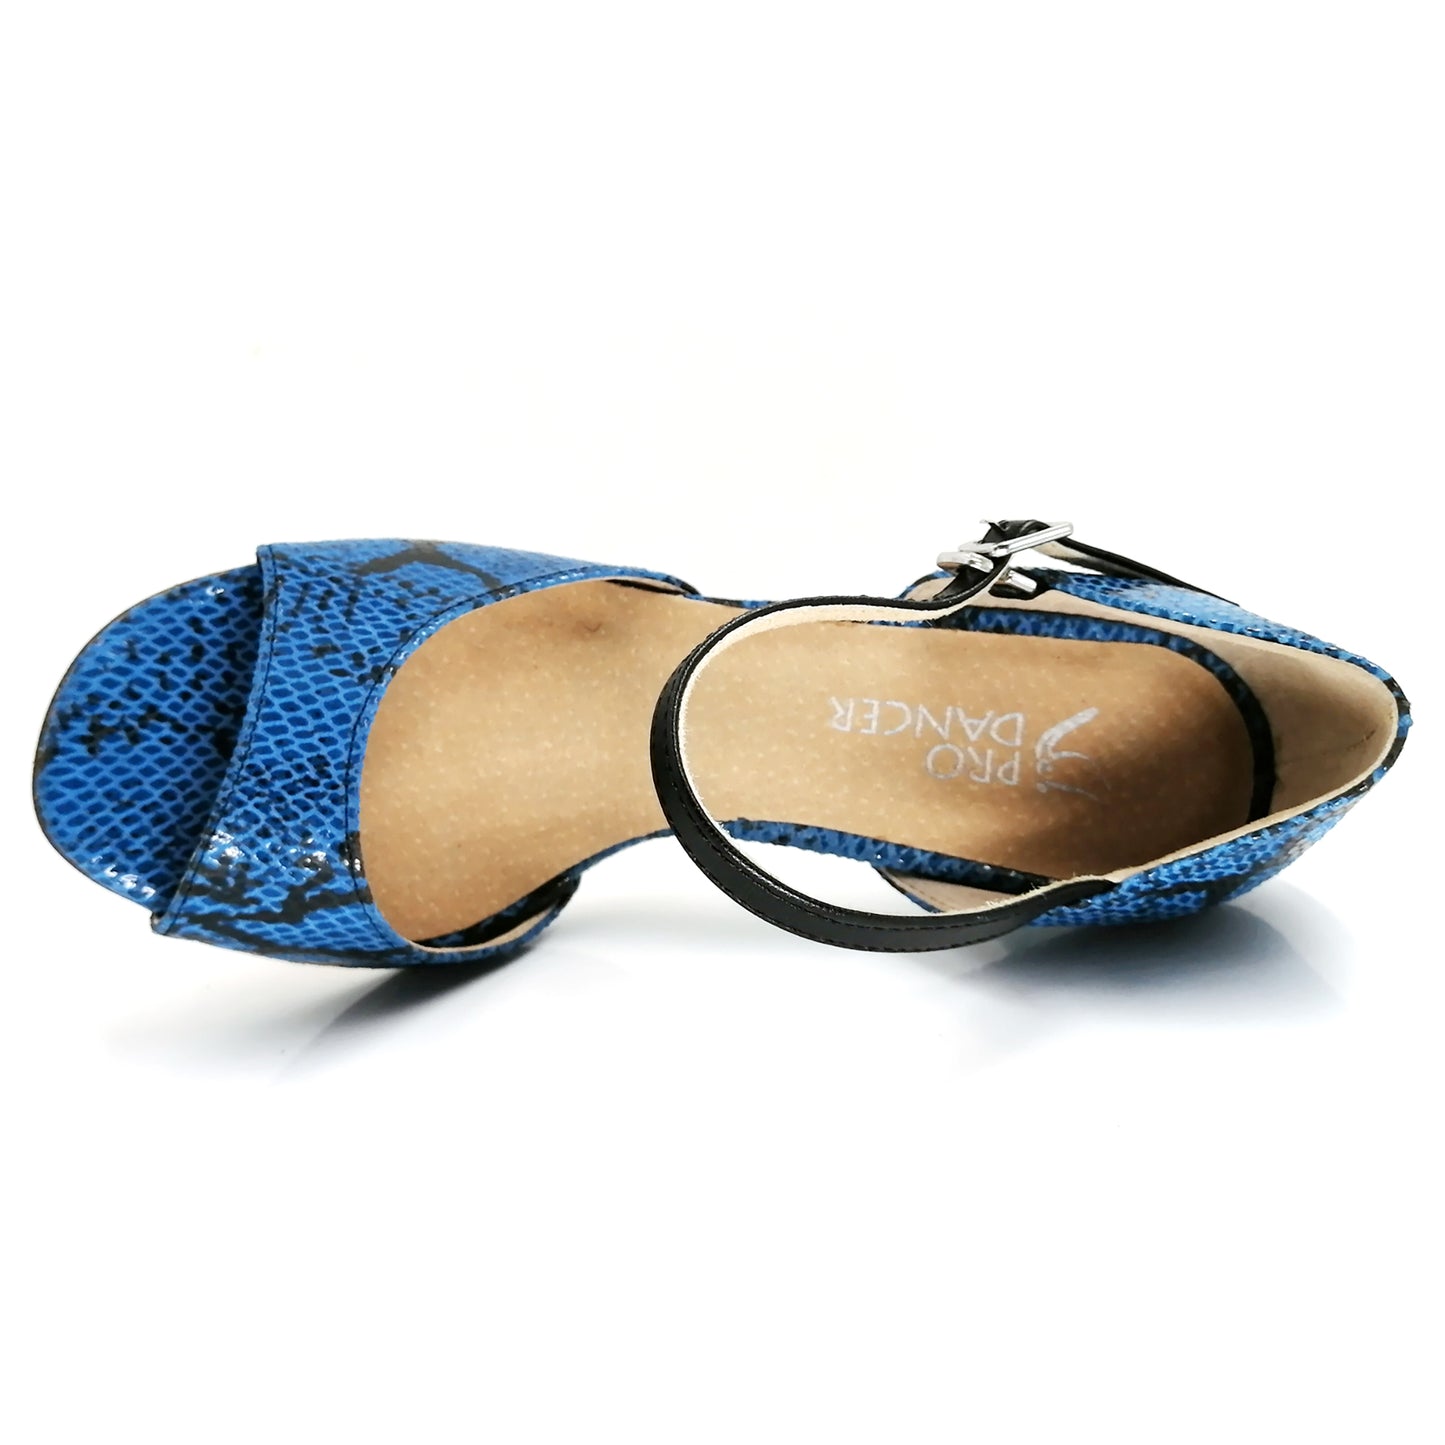 Pro Dancer Argentine Tango Shoes Ladies High Heel Dance Sandals Leather Sole Blue (PD-9001E)